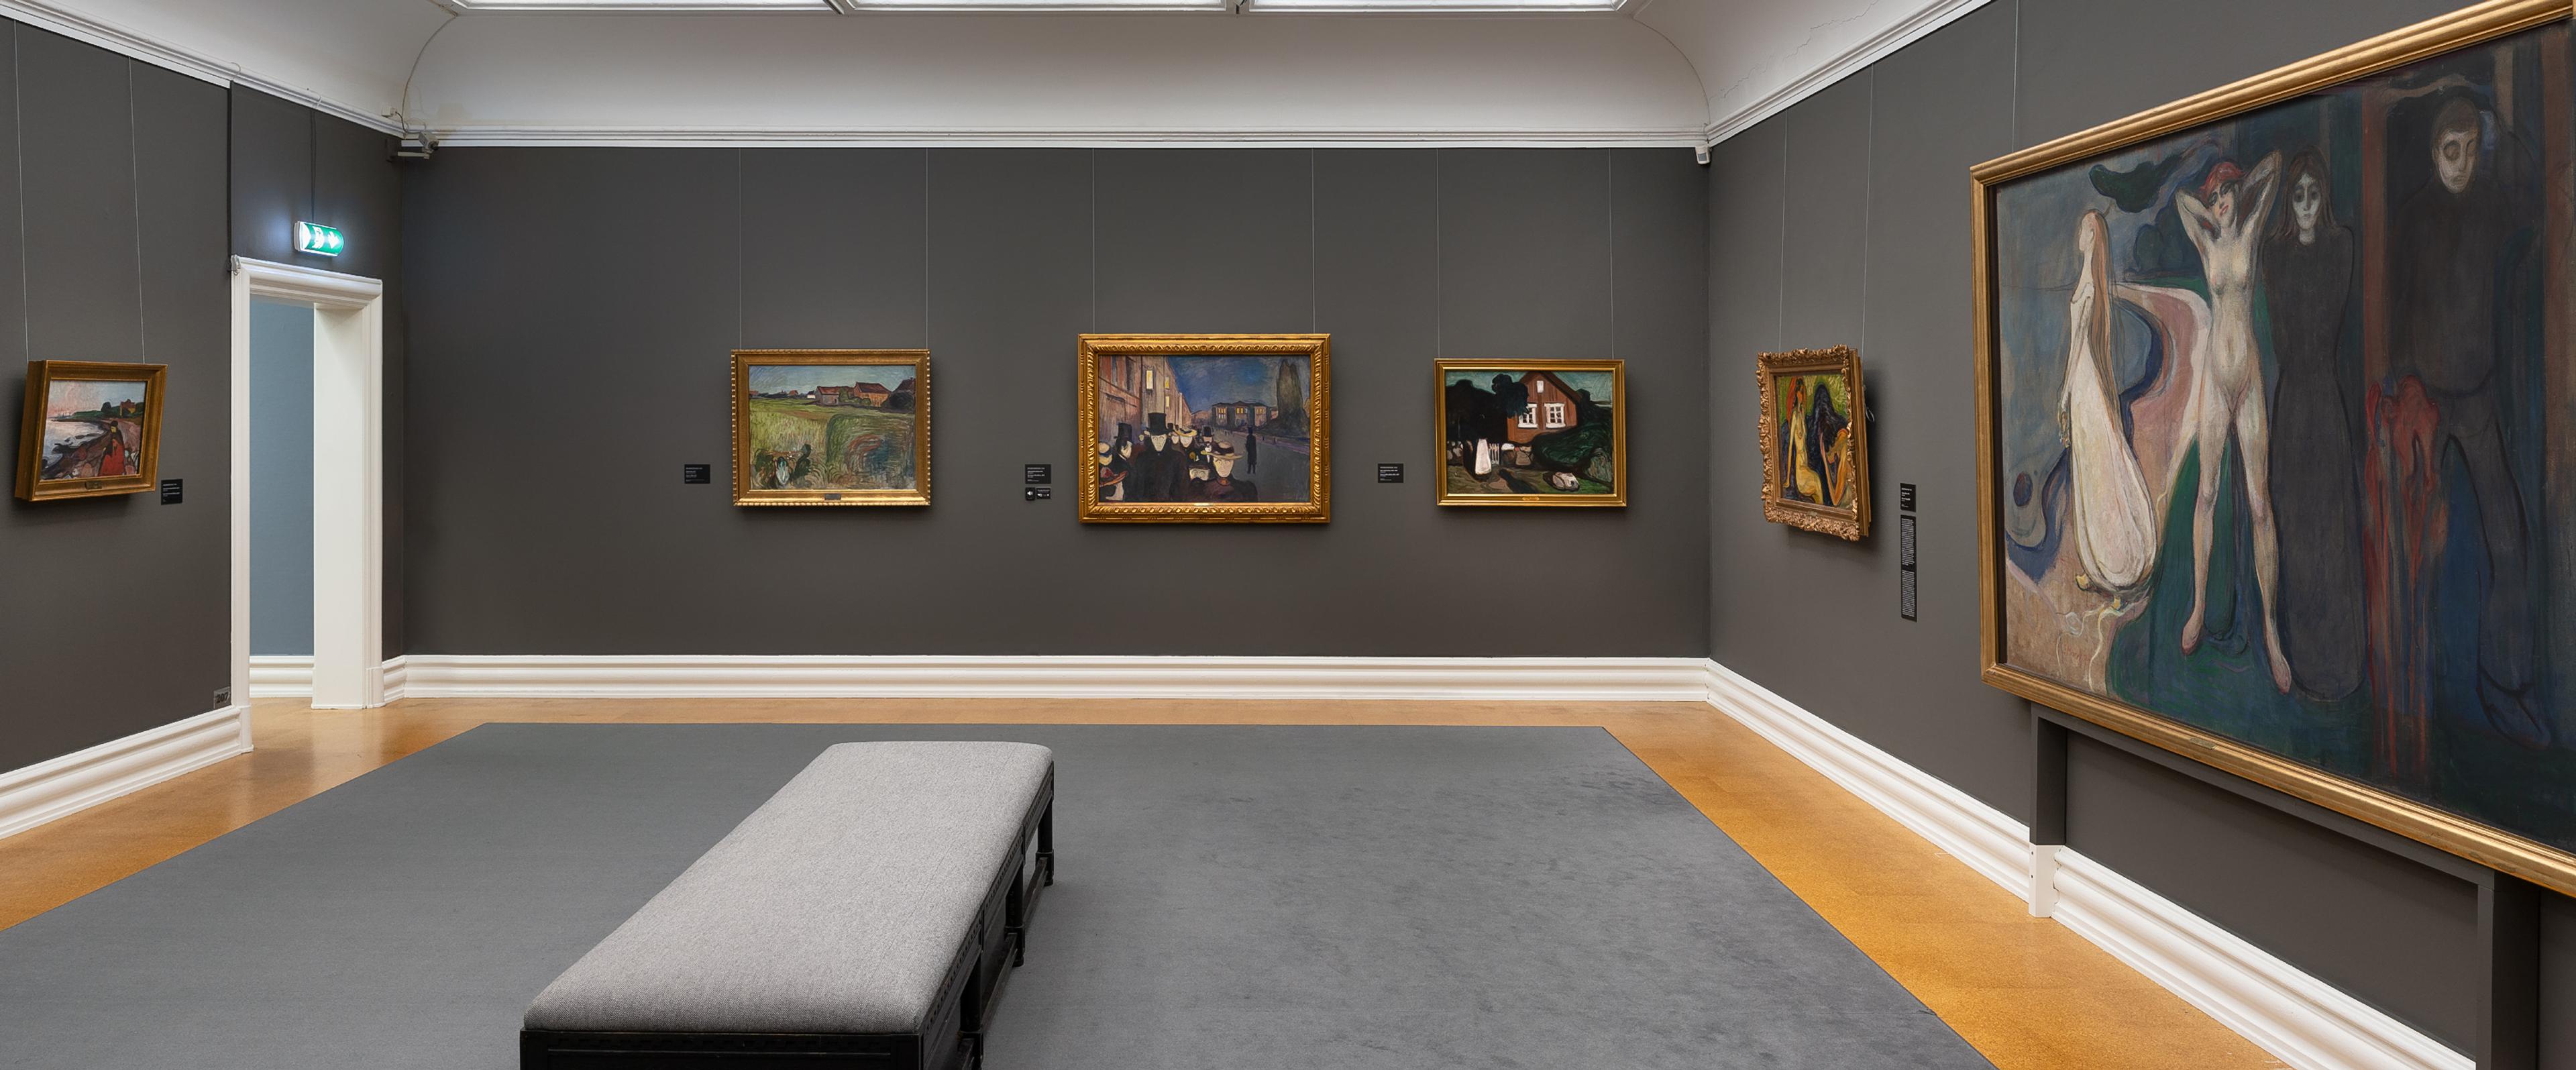 Et utstillingsrom med grå vegger, med malerier av Edvard Munch.